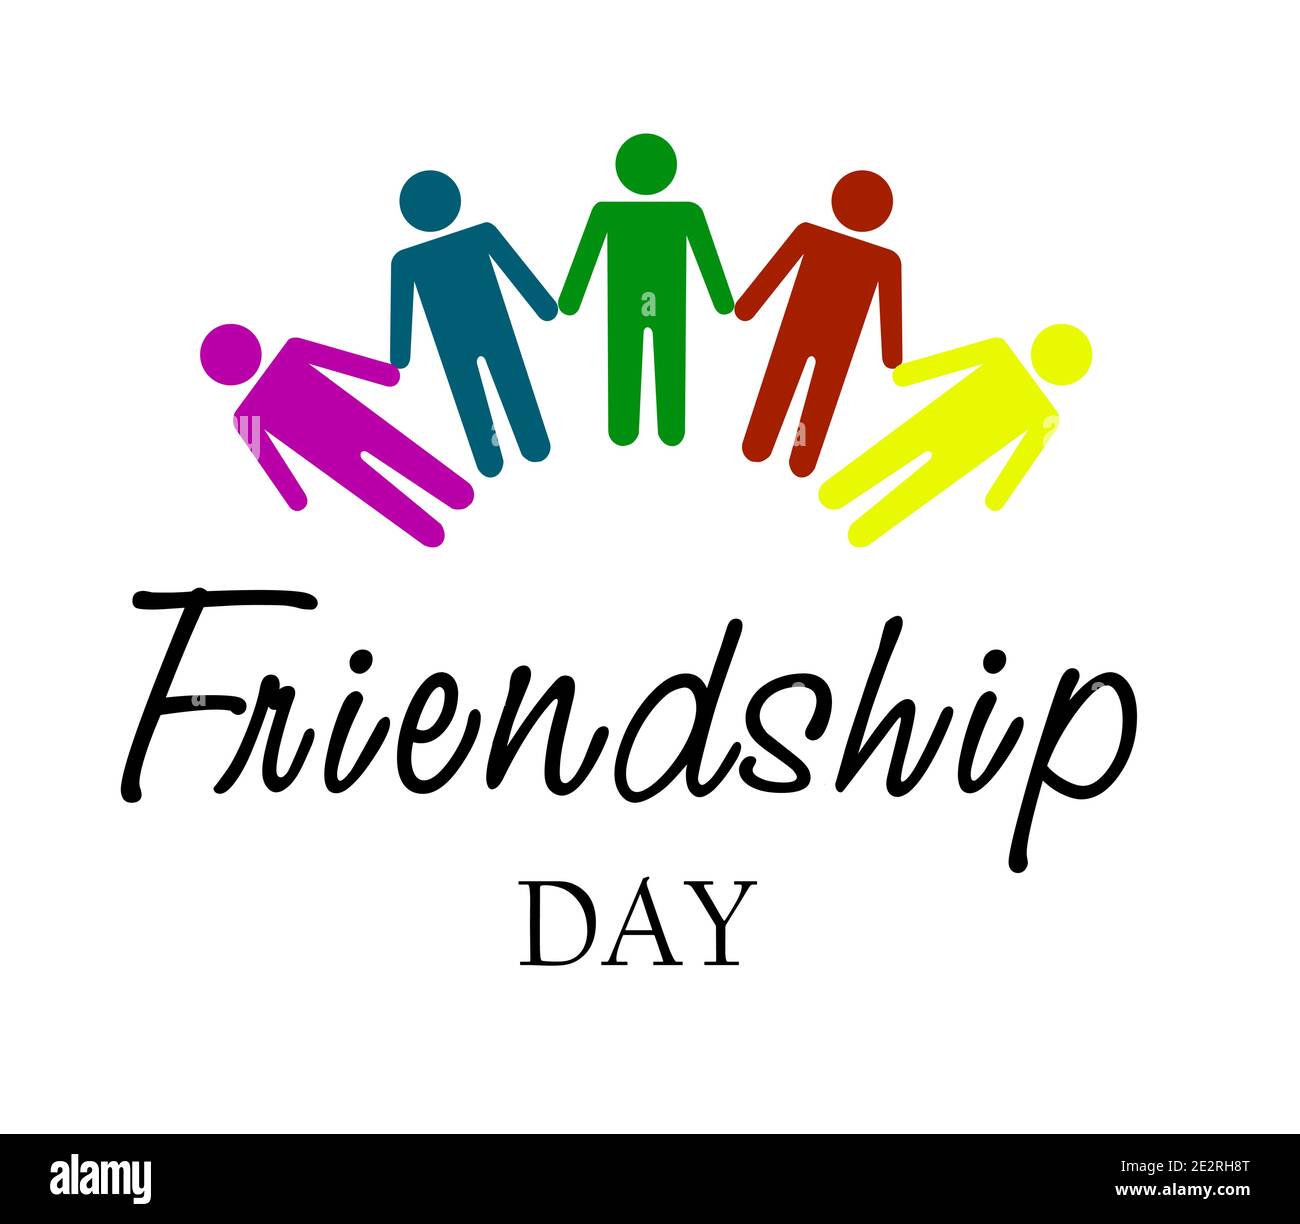 Happy Friendship Day - motif typographique vectoriel. Citation inspirante sur l'amitié. Utilisable comme cartes de vœux, affiches, vêtements, t-shirt pour votre Illustration de Vecteur